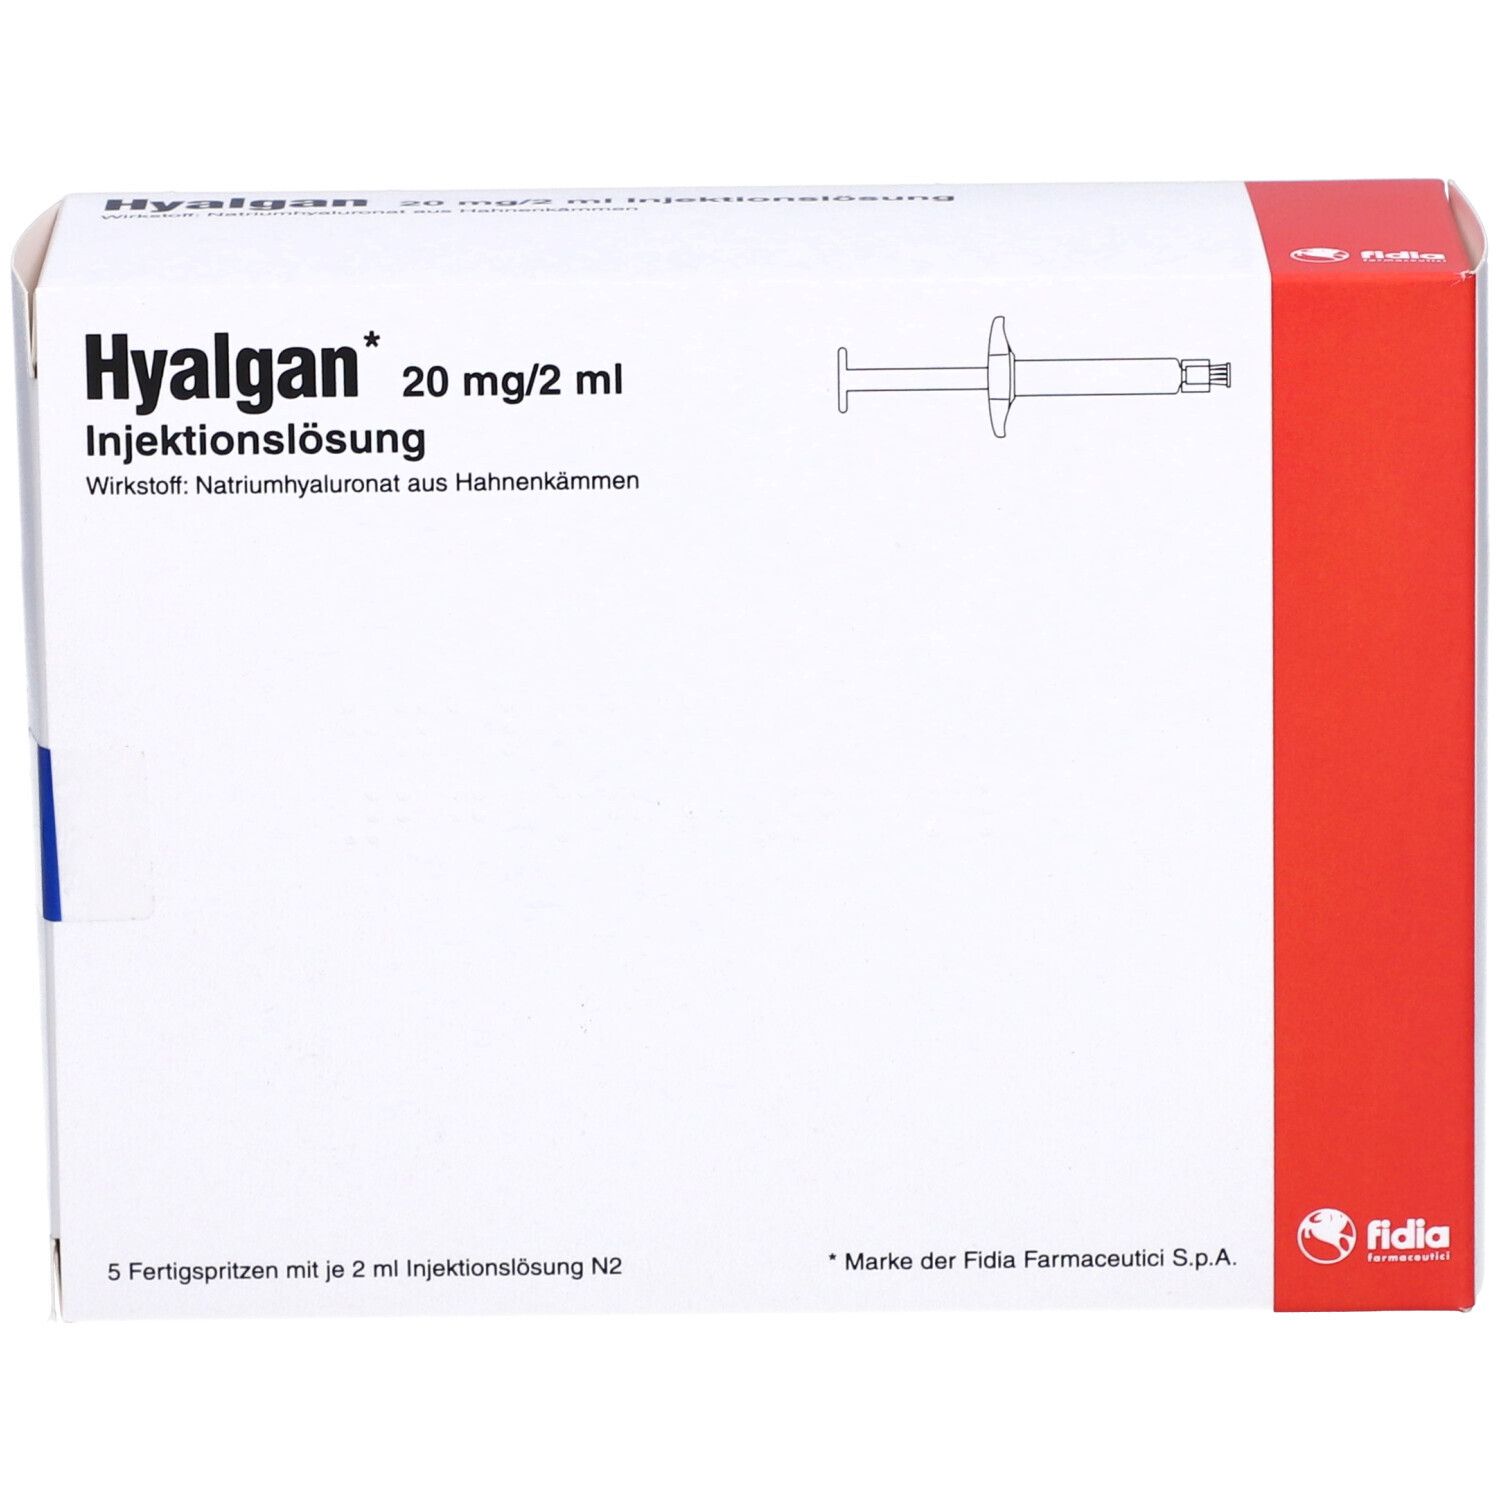 Hyalgan 5x2 ml mit dem E-Rezept kaufen - SHOP APOTHEKE